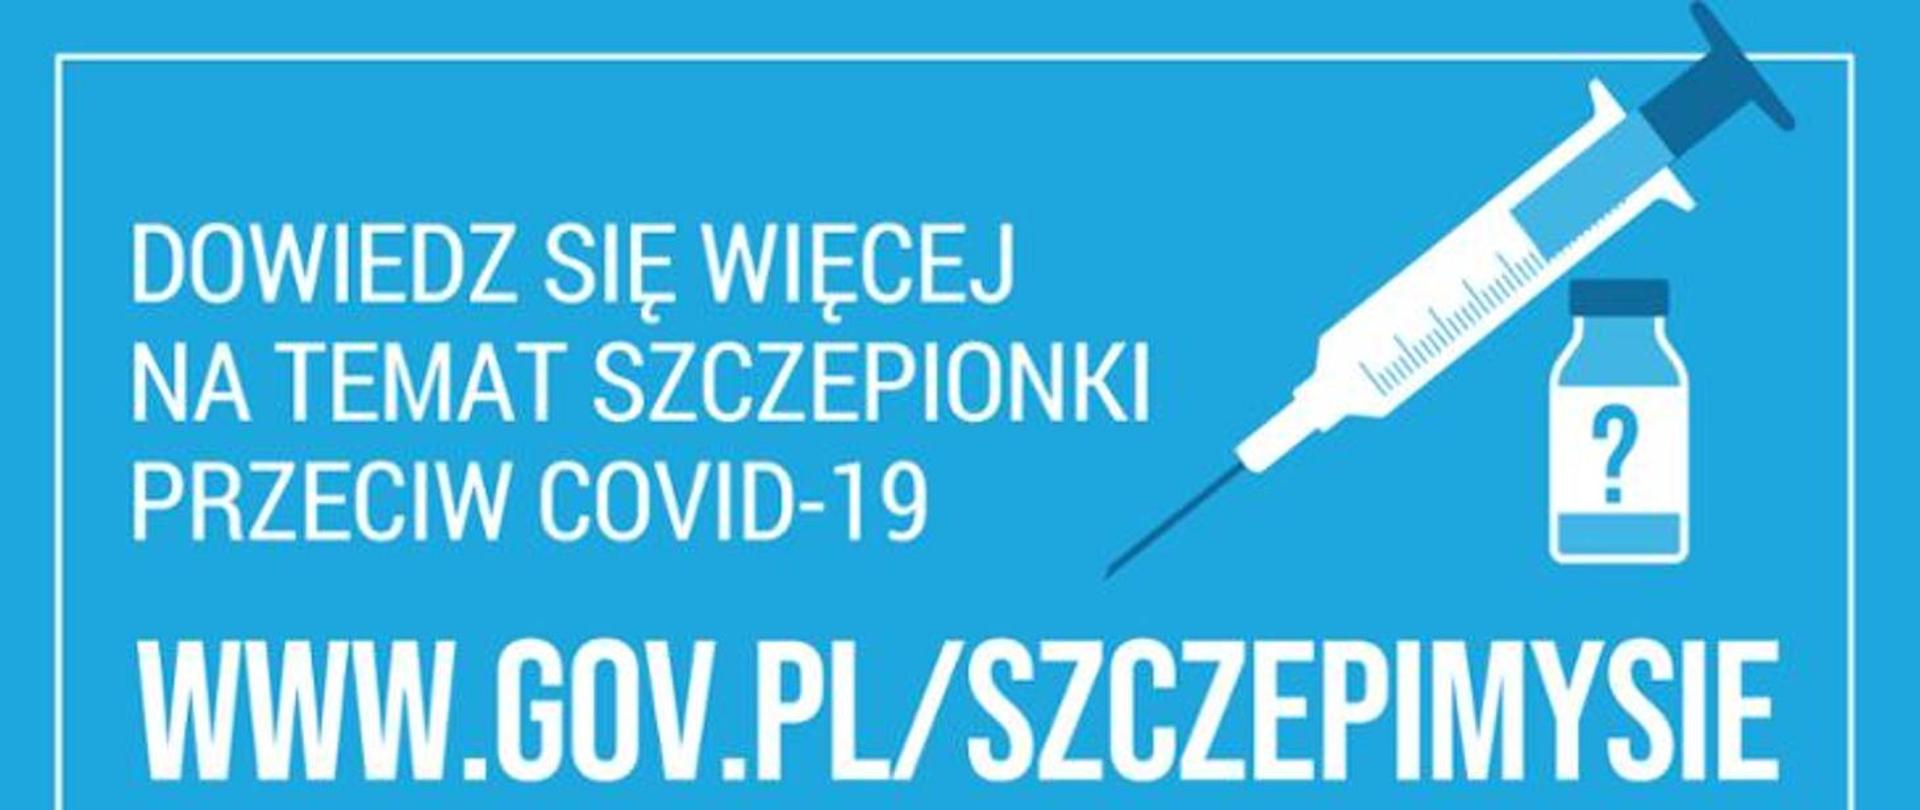 Grafika koloru niebieskiego z białymi napisami zachęcająca do odwiedzenia strony gov.pl/szczepimysie